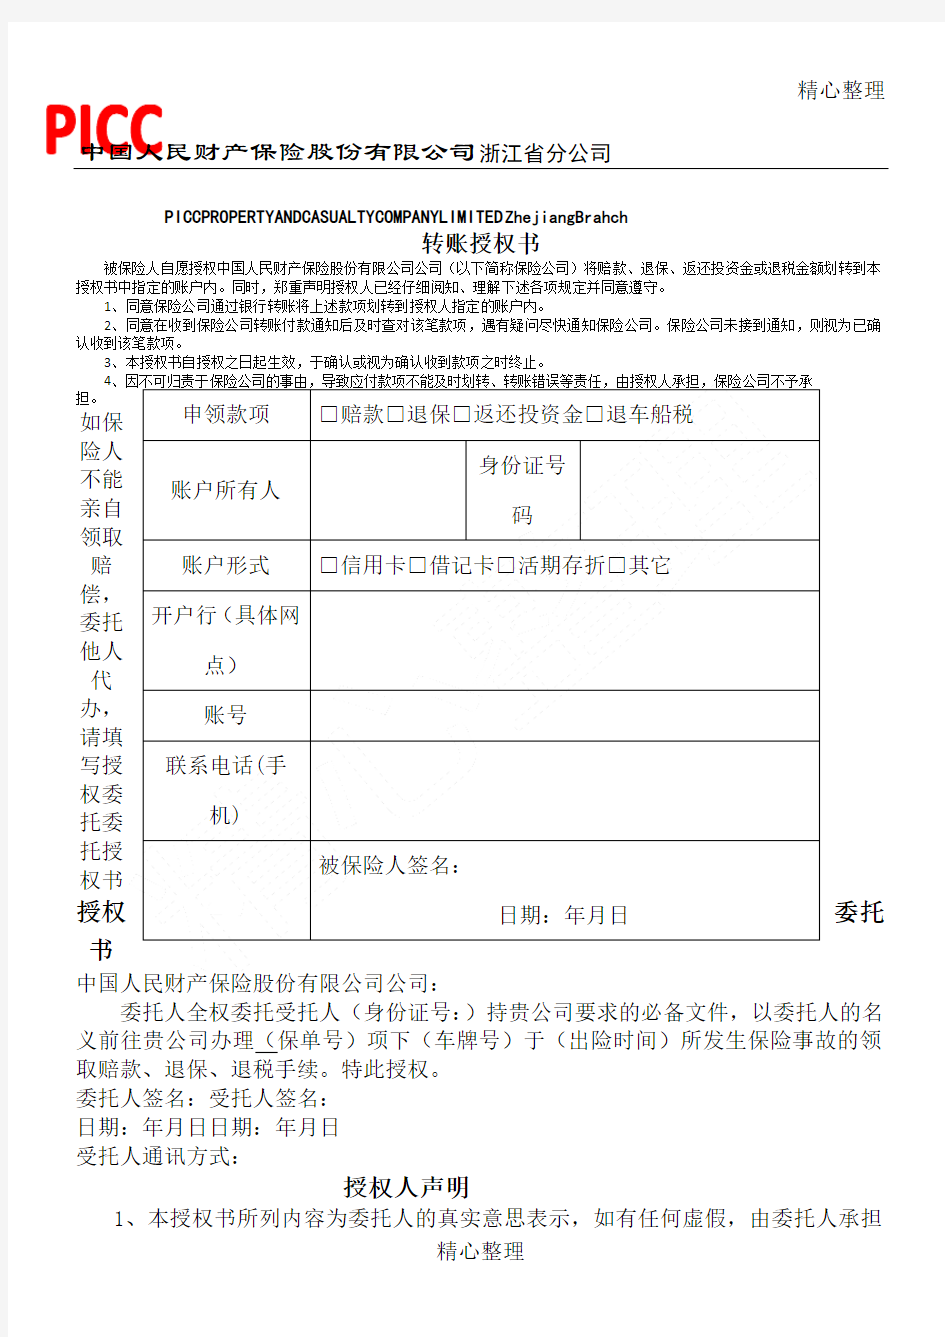 PICC中国人民财产保险股份公司转账授权方案